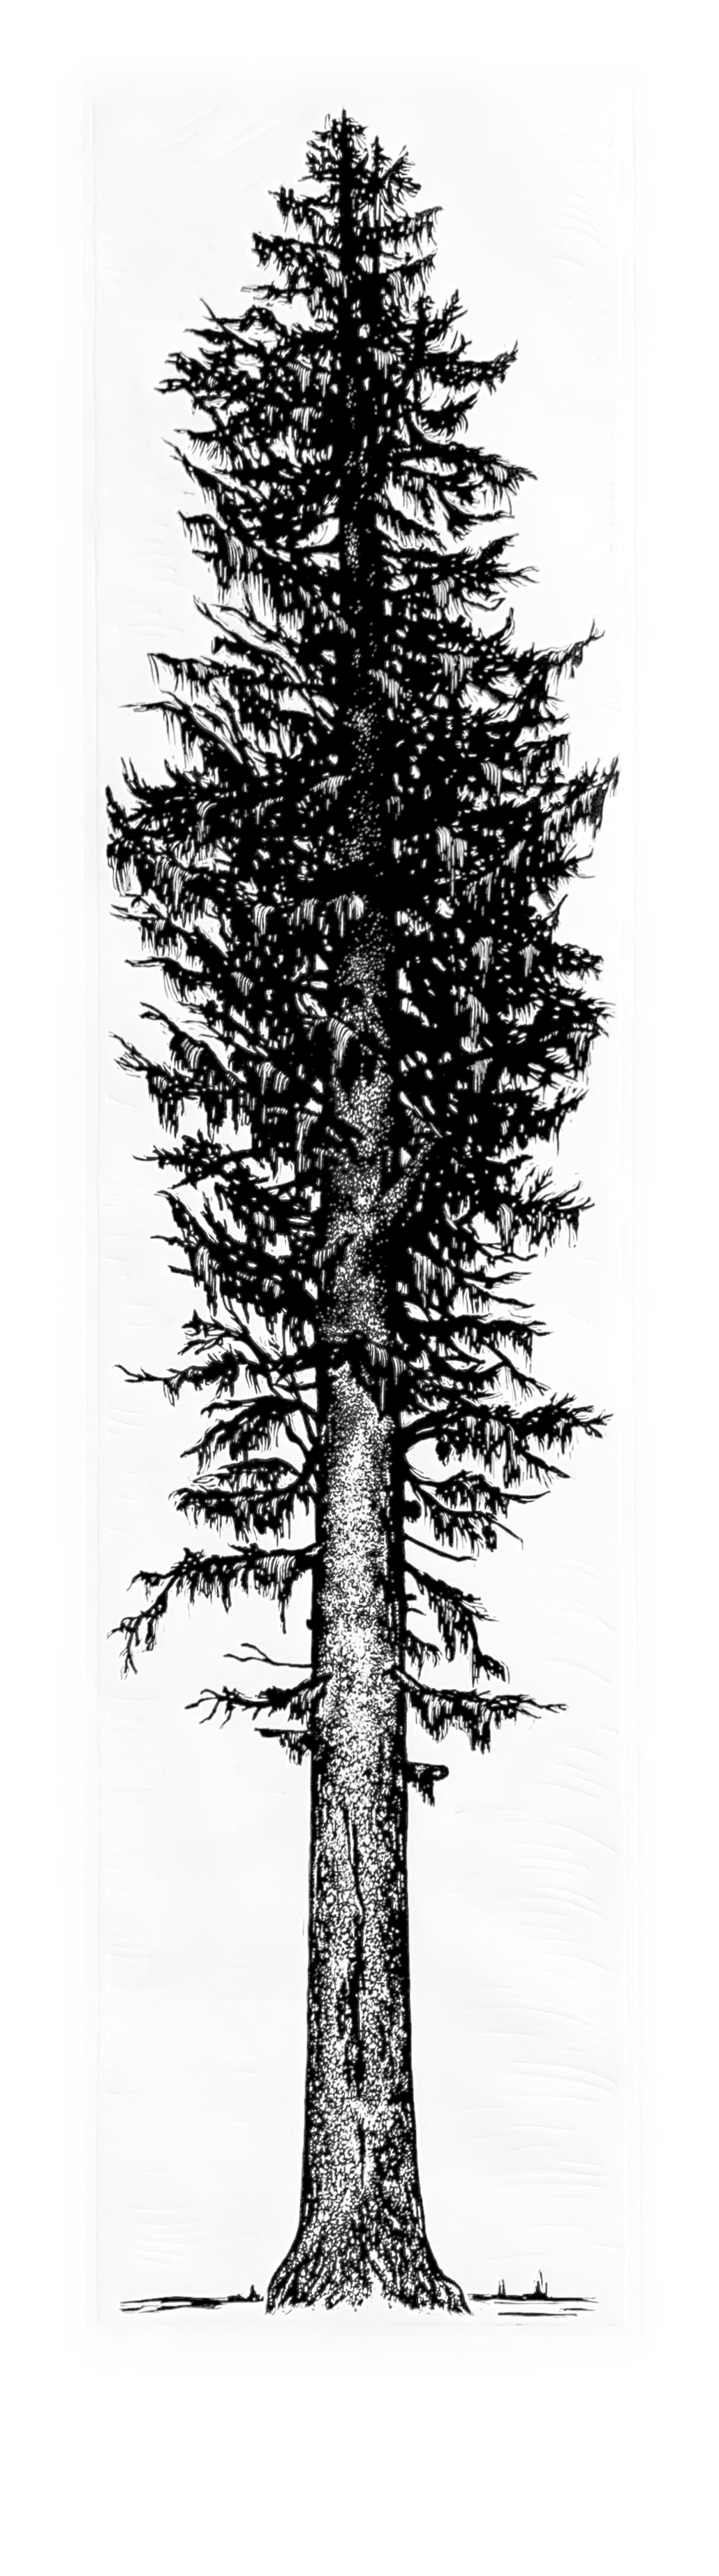 Sitka Spruce | 15.75" x 56" | Wood Block Print